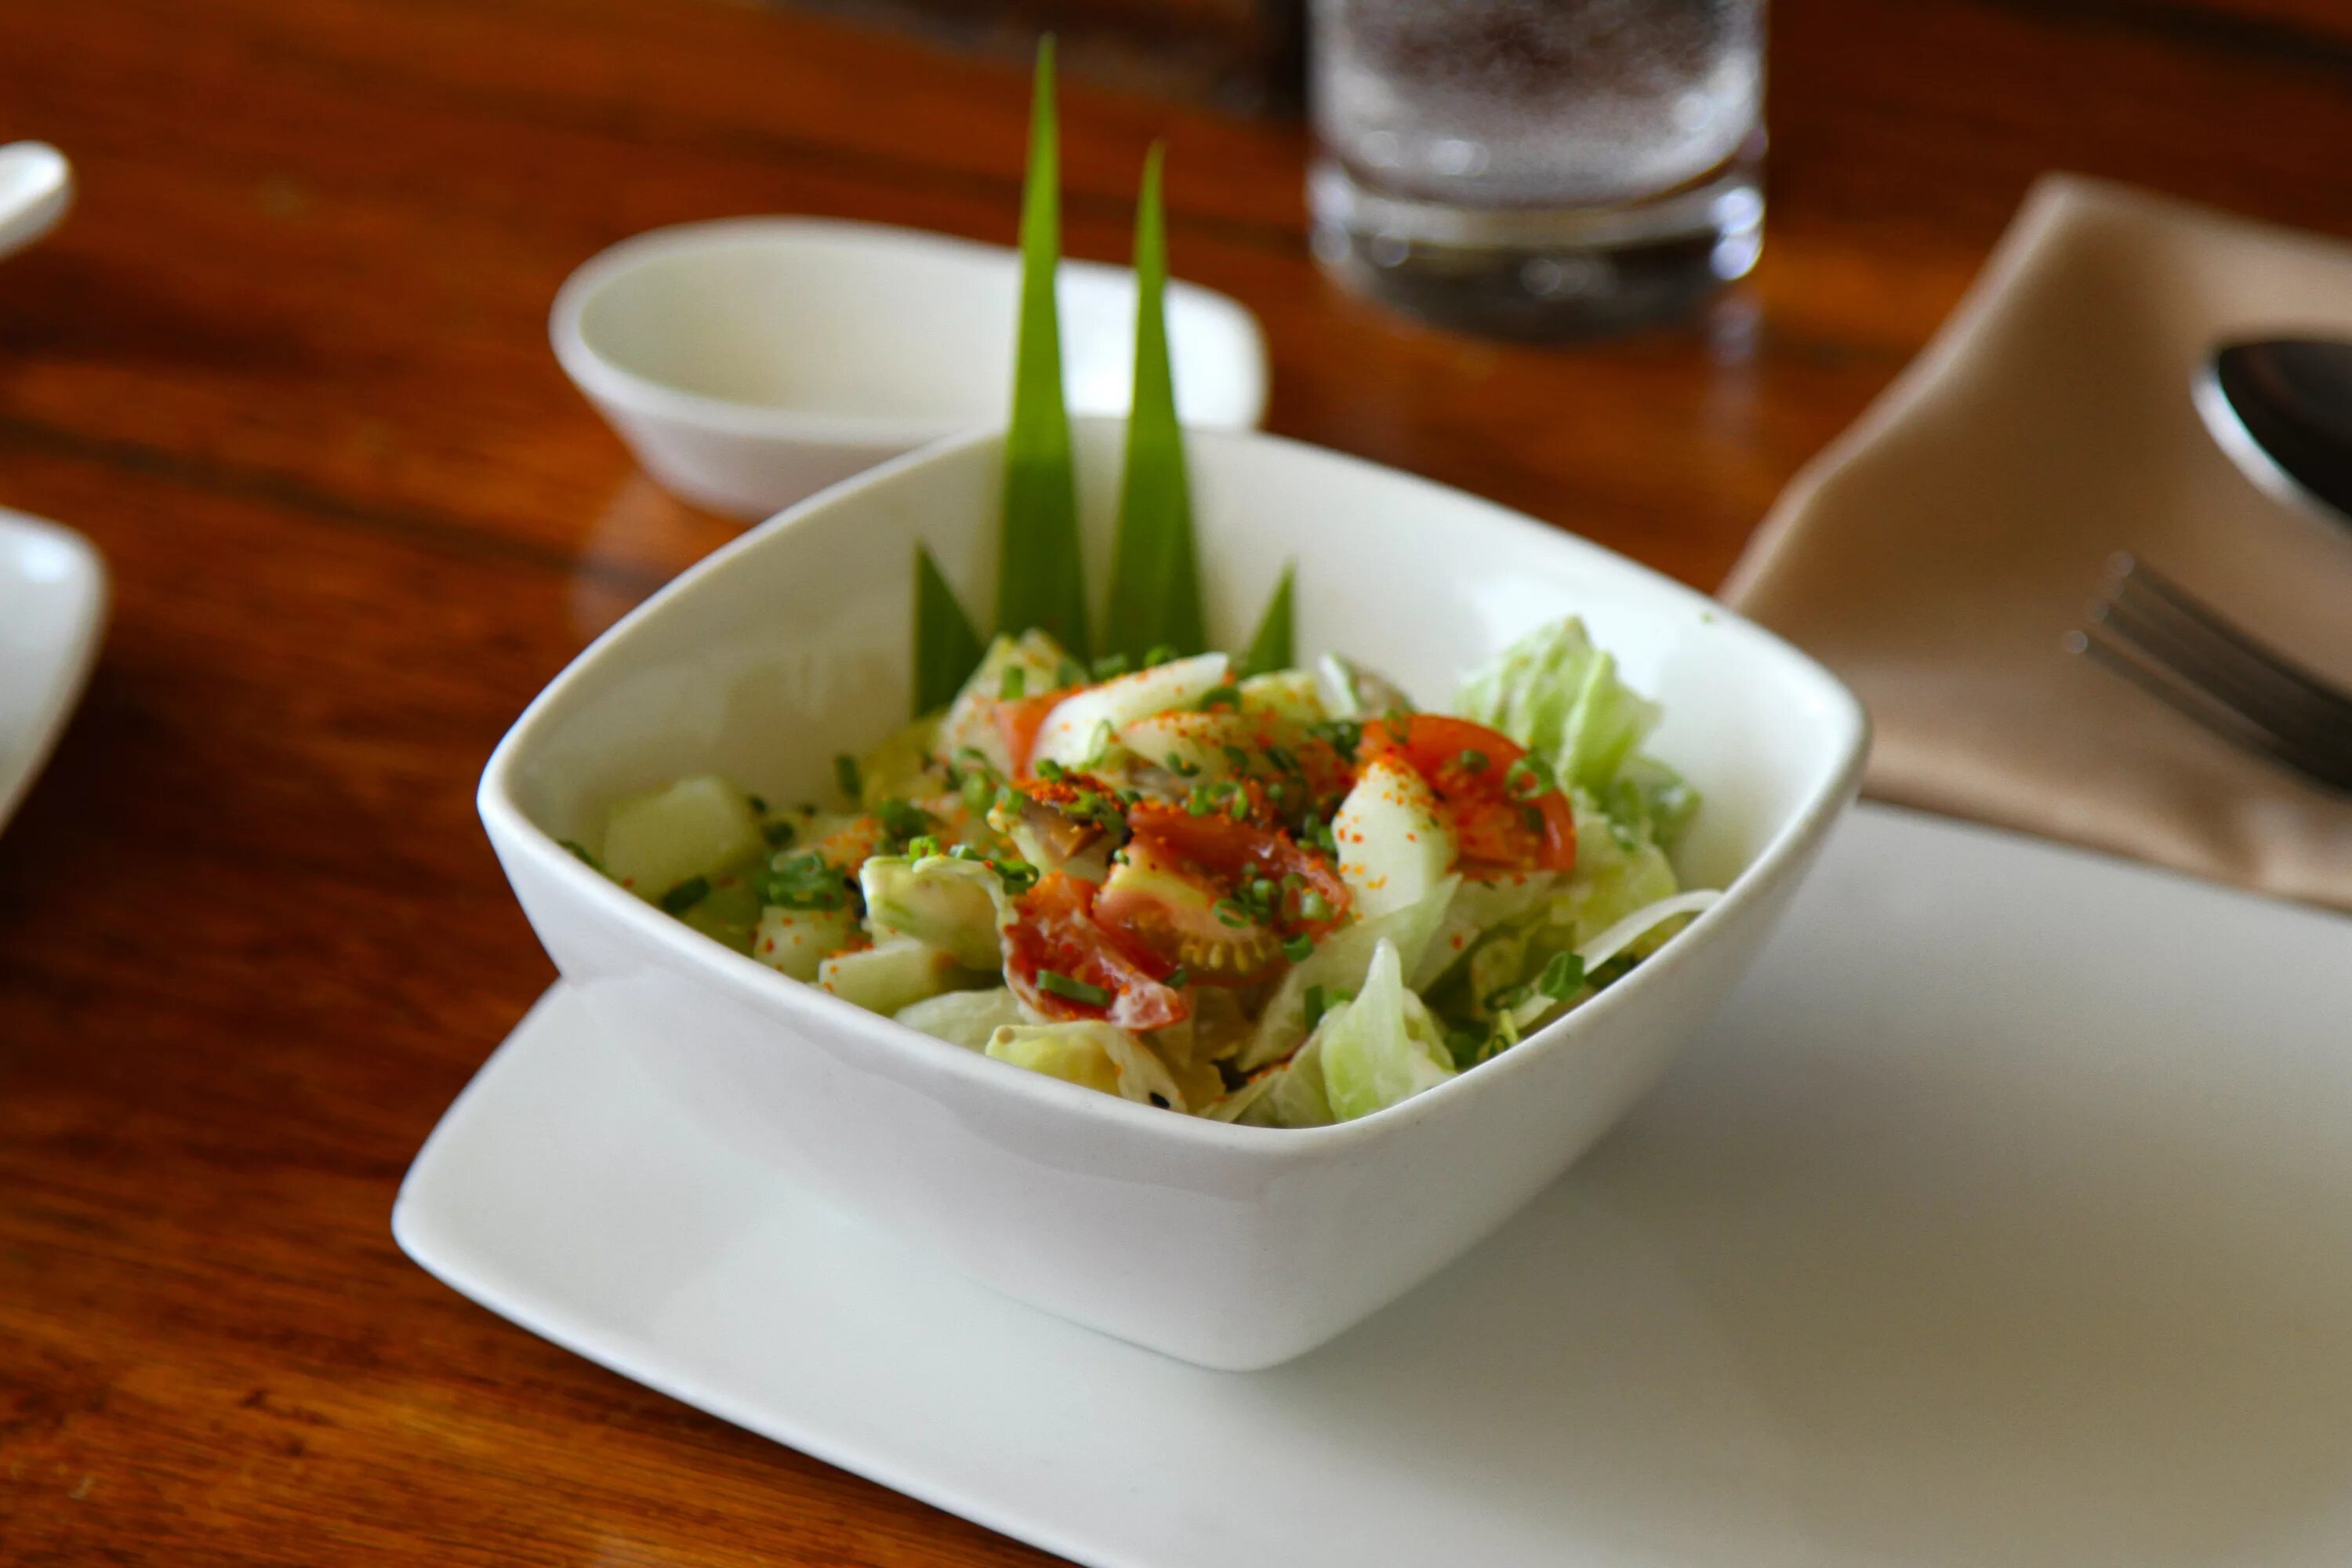 Vegetable lunch. Сельдерей на обед. Еда в глубокой тарелке. Салат в прямоугольной тарелке. Овощной салат в белой чашке фото.